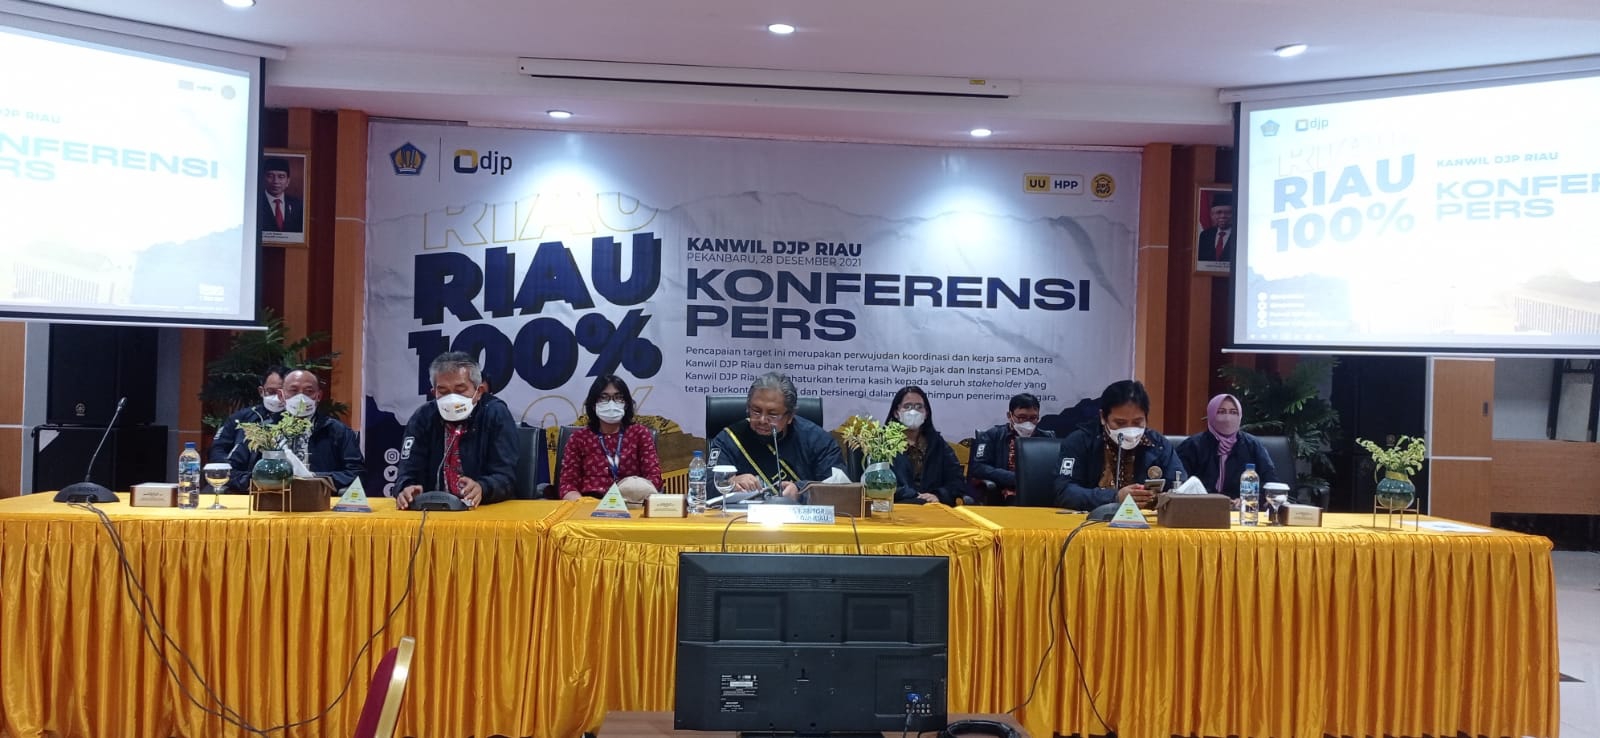 Penerimaan Pajak di Riau Lampaui Target, DJP: Ini Hari yang Bersejarah